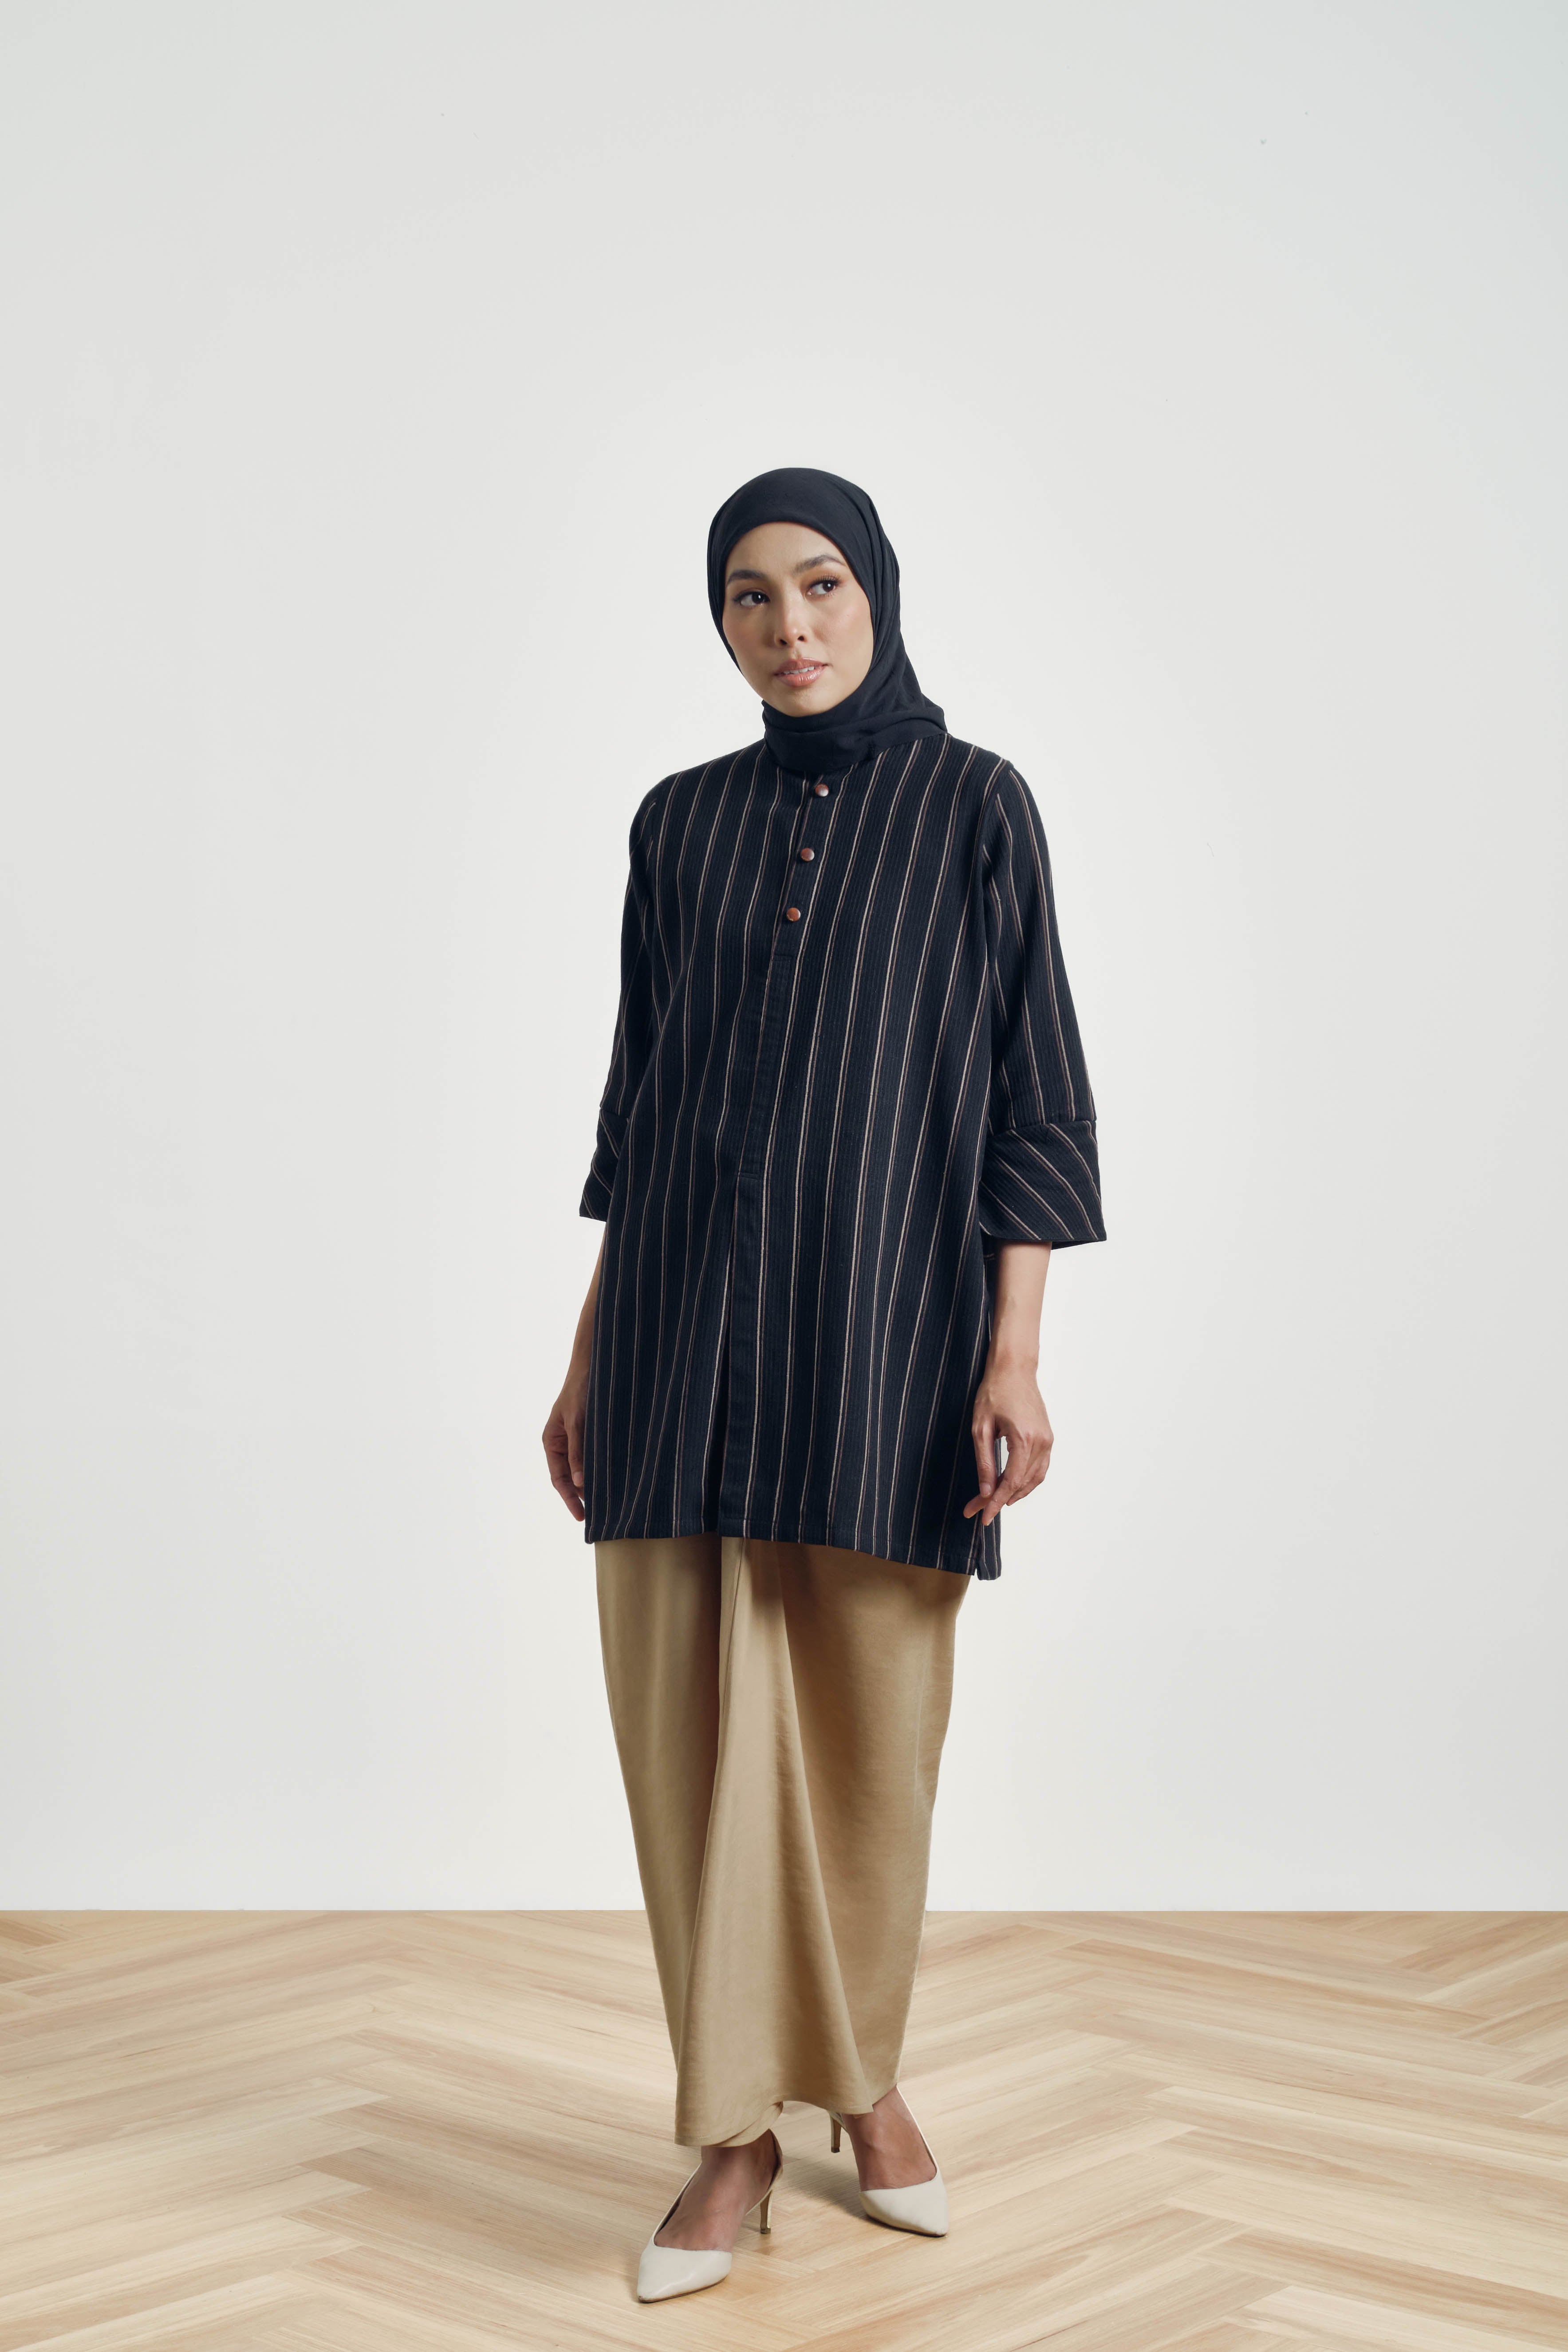 Mansoor Baju Kurung Cekak Musang - Black Brown Stripe